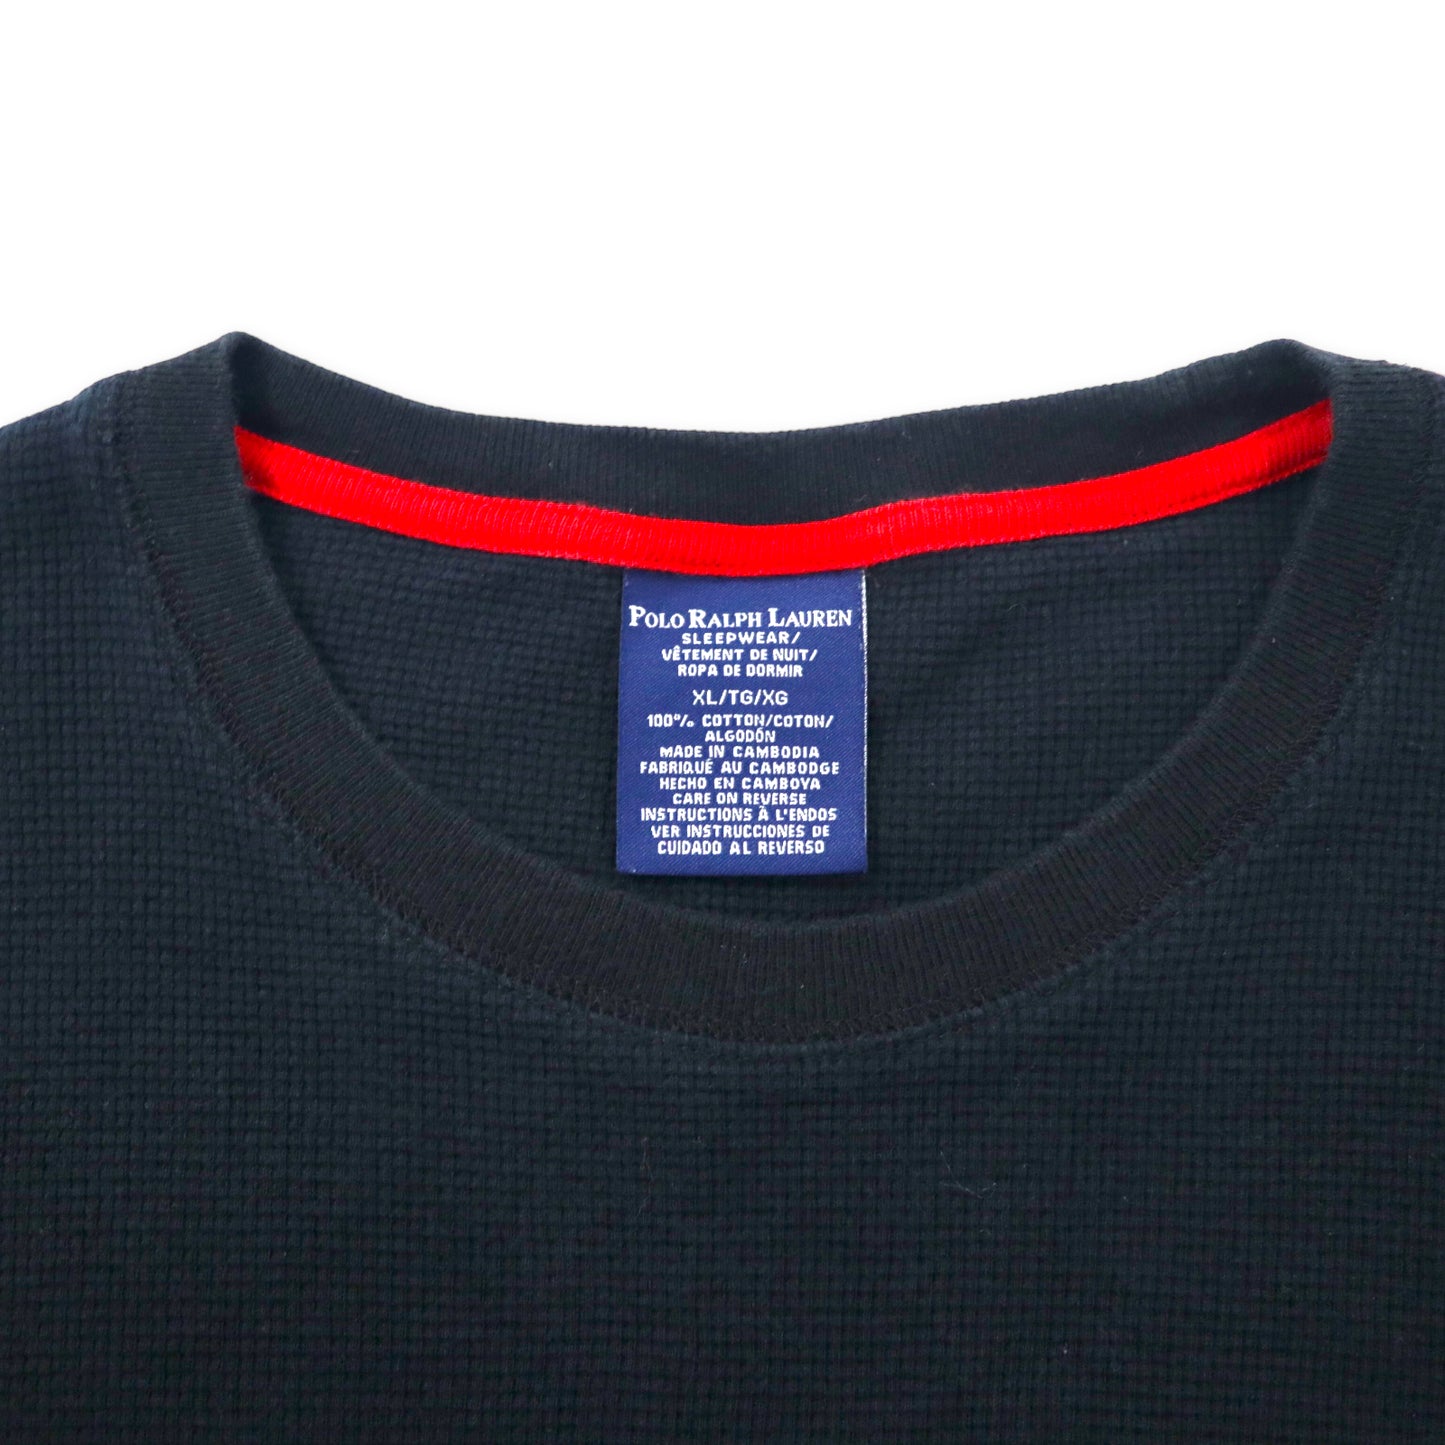 POLO RALPH LAUREN サーマル ロングスリーブ Tシャツ ロンT XL ブラック コットン スモールポニー刺繍